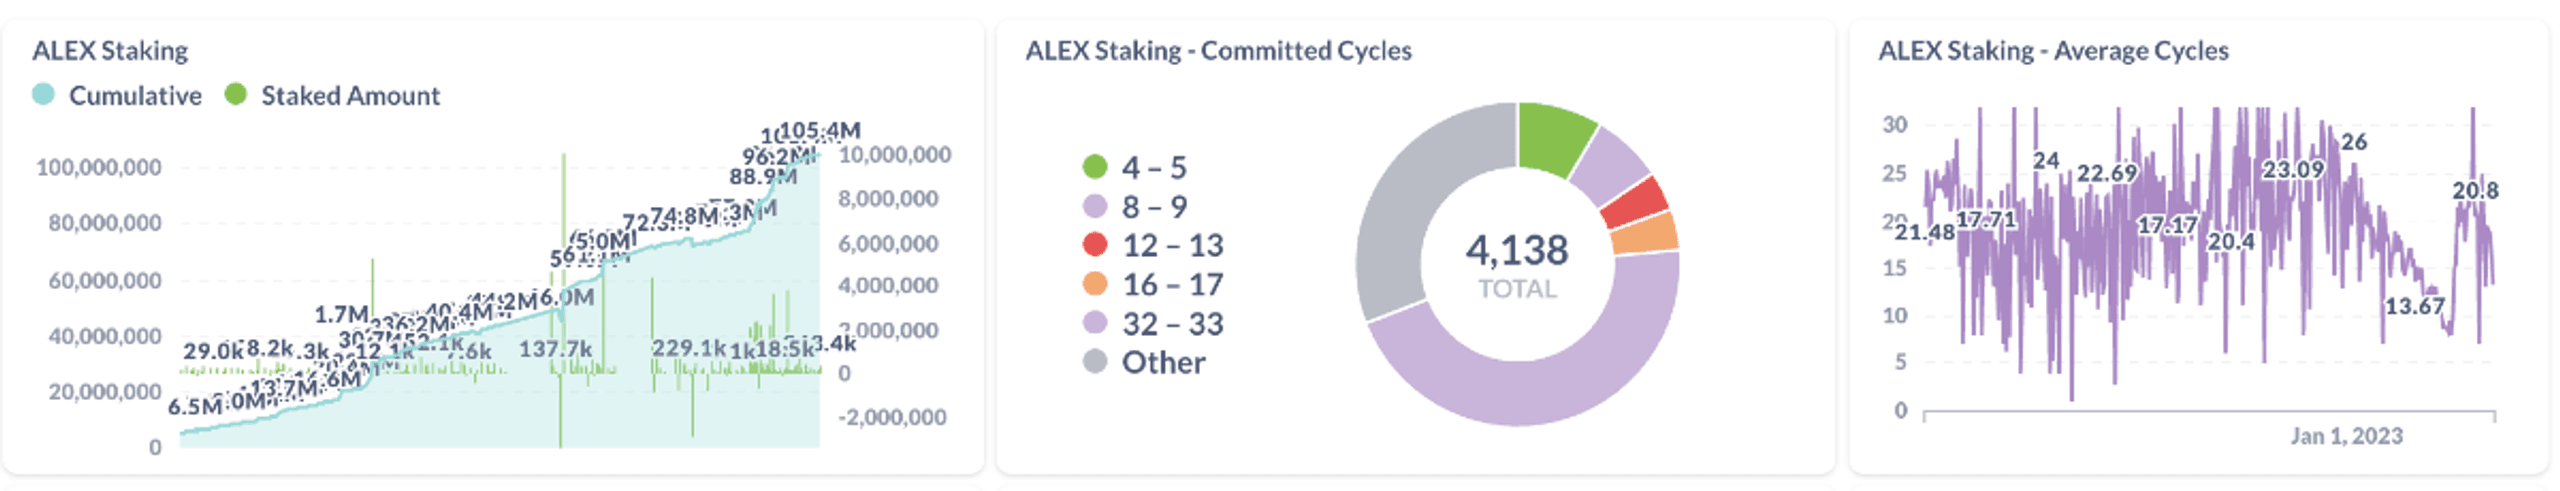 alex staking